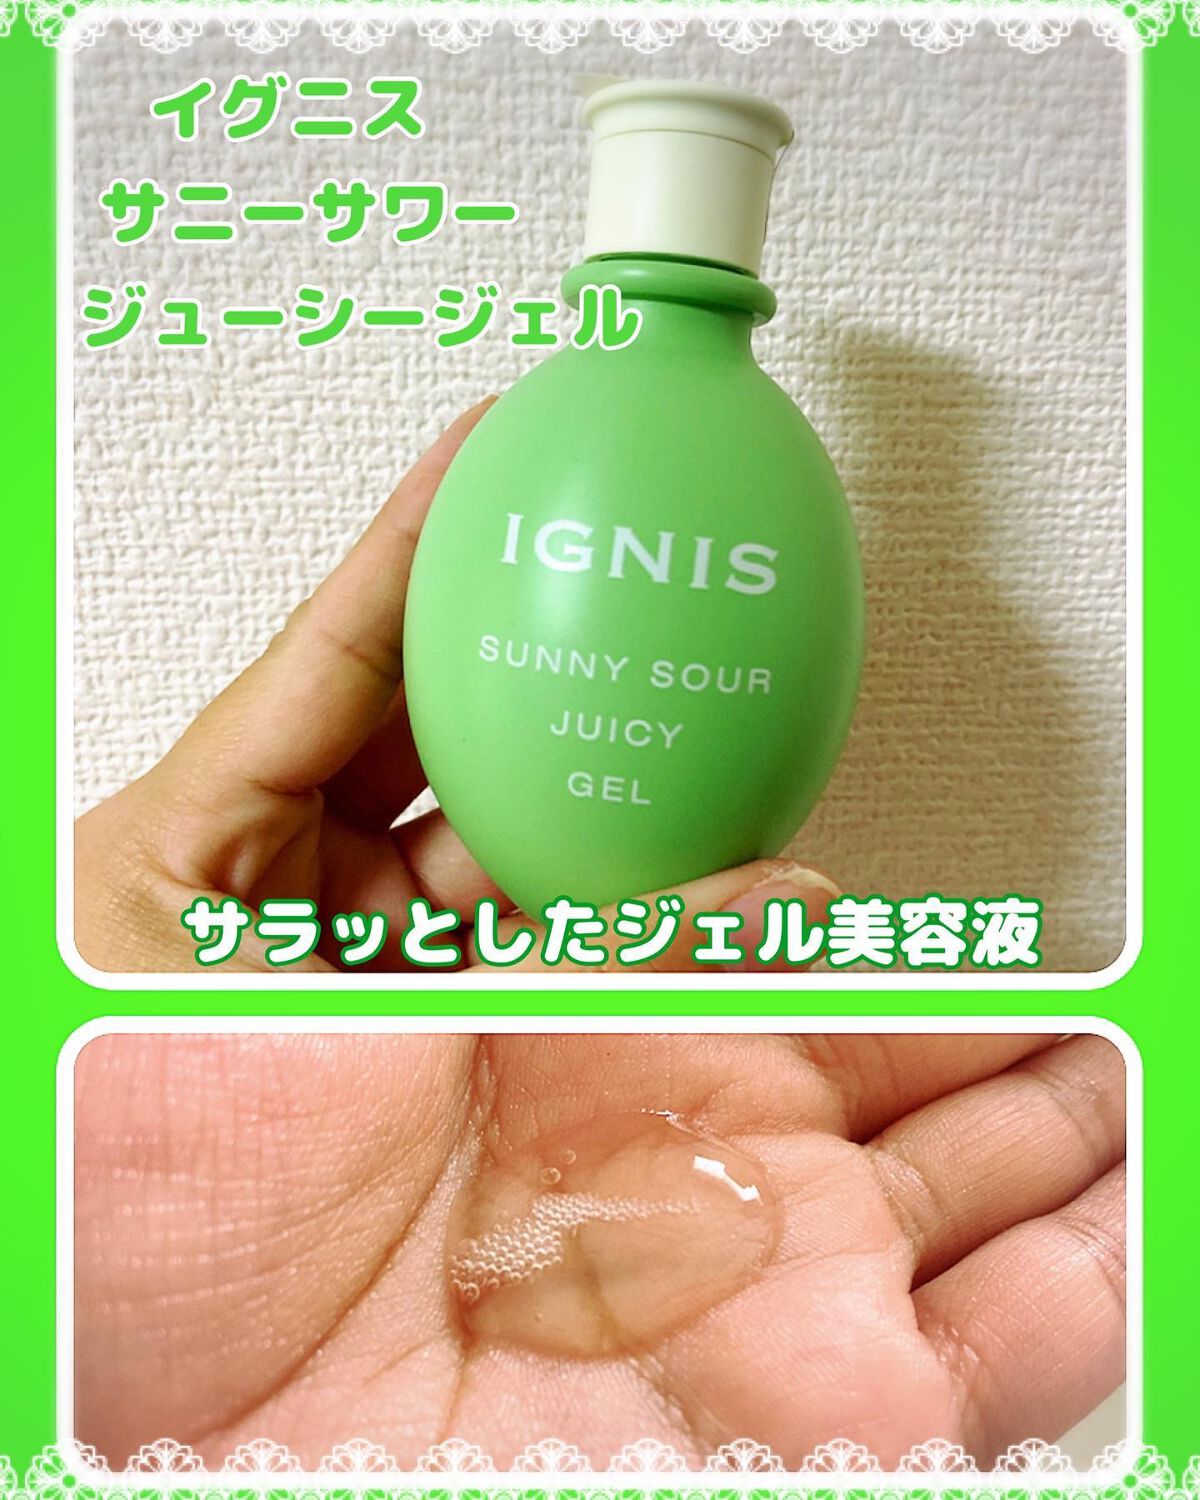 イグニス IGNIS サニーサワーローション 化粧水 サニーサワーミルク 乳液 通販